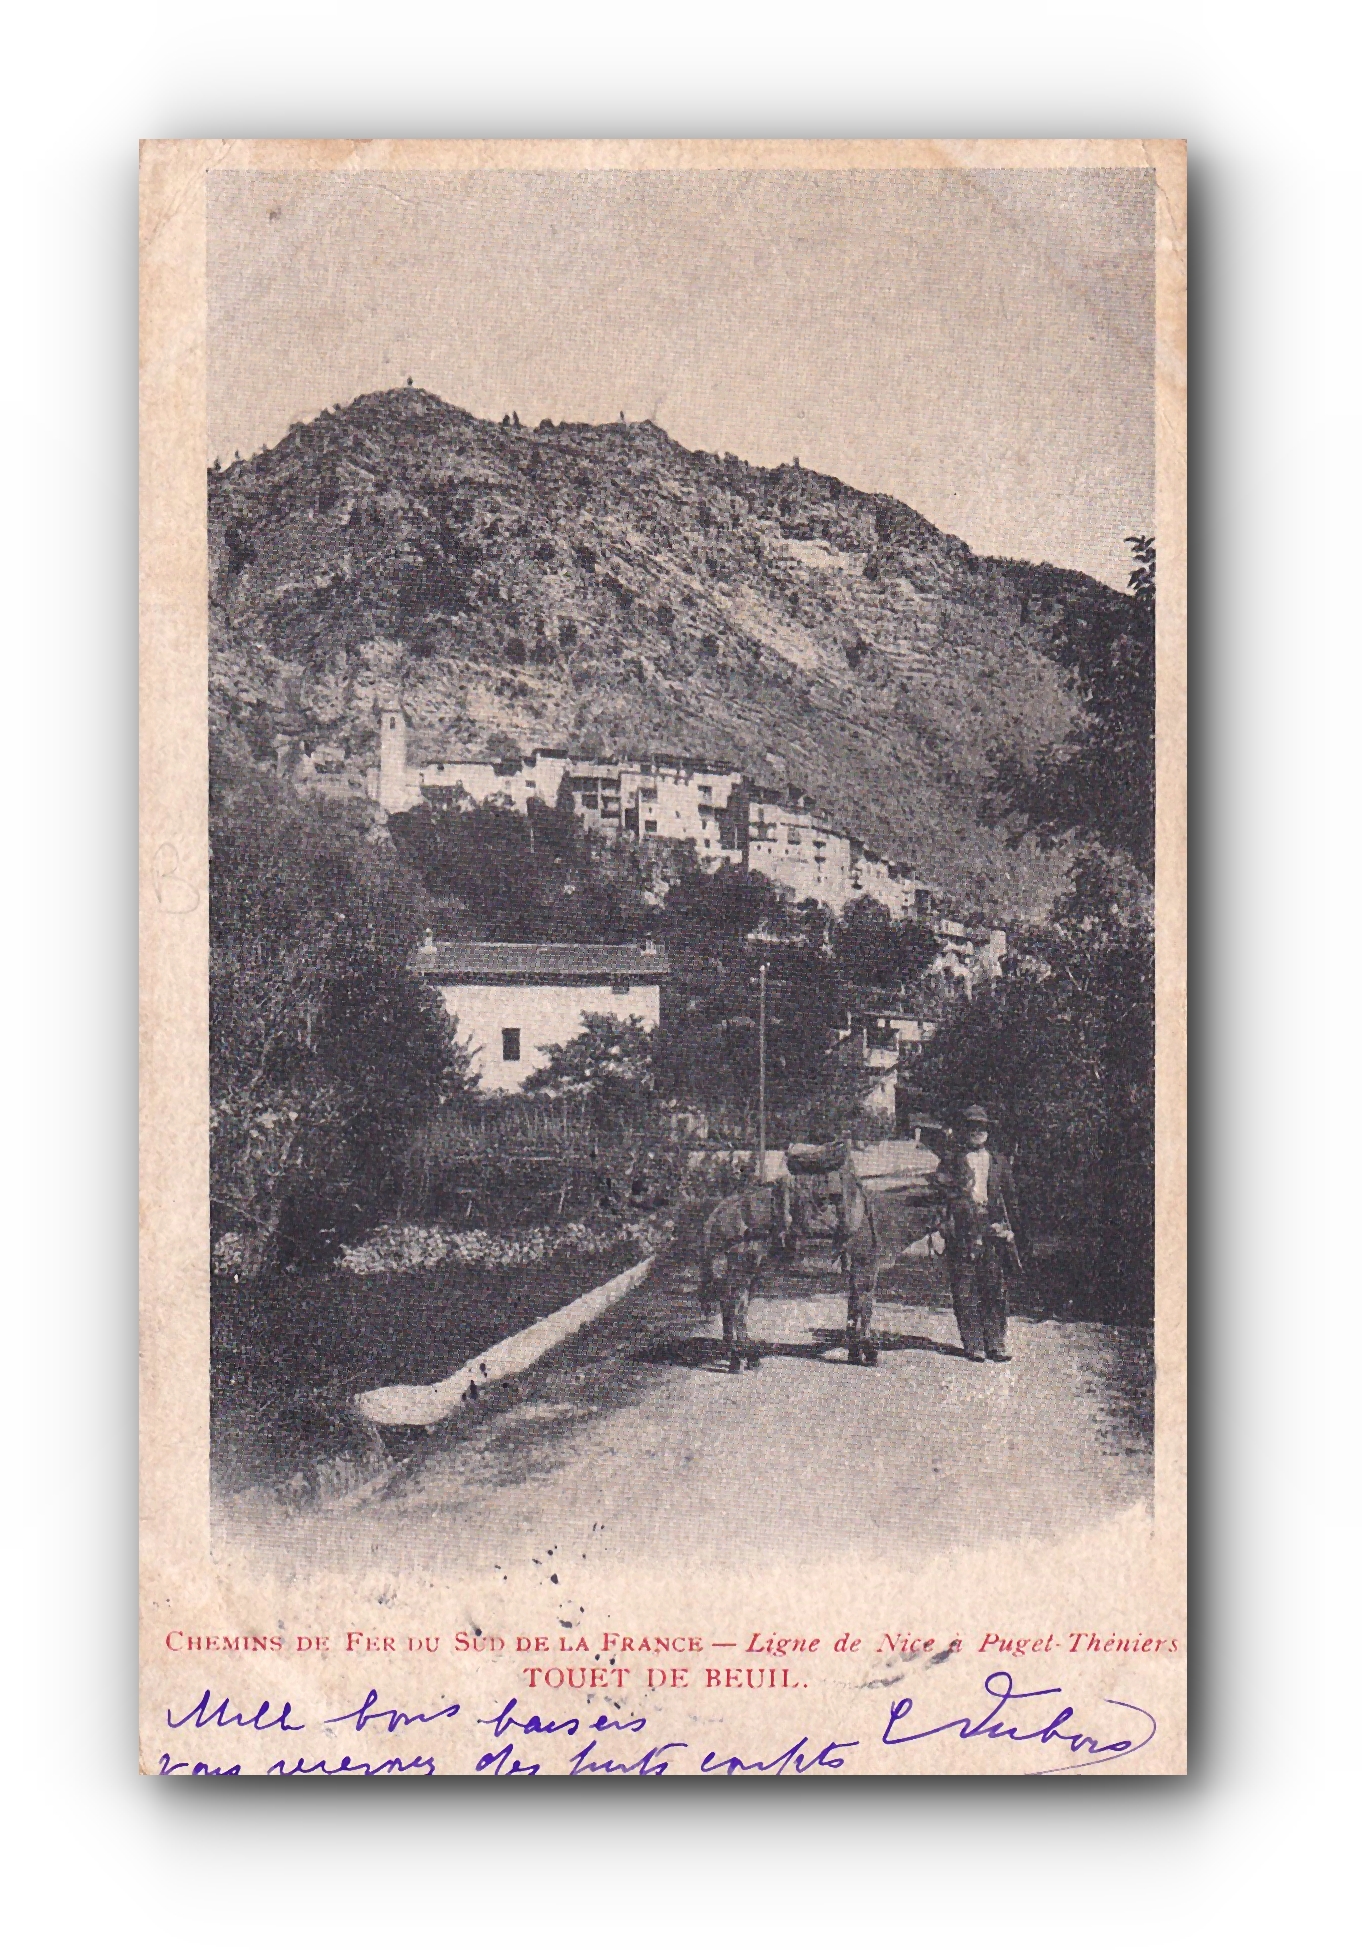 - Chemins de Fer du Sud de la France - TOUET DE BEUIL - 13.04.1904 -